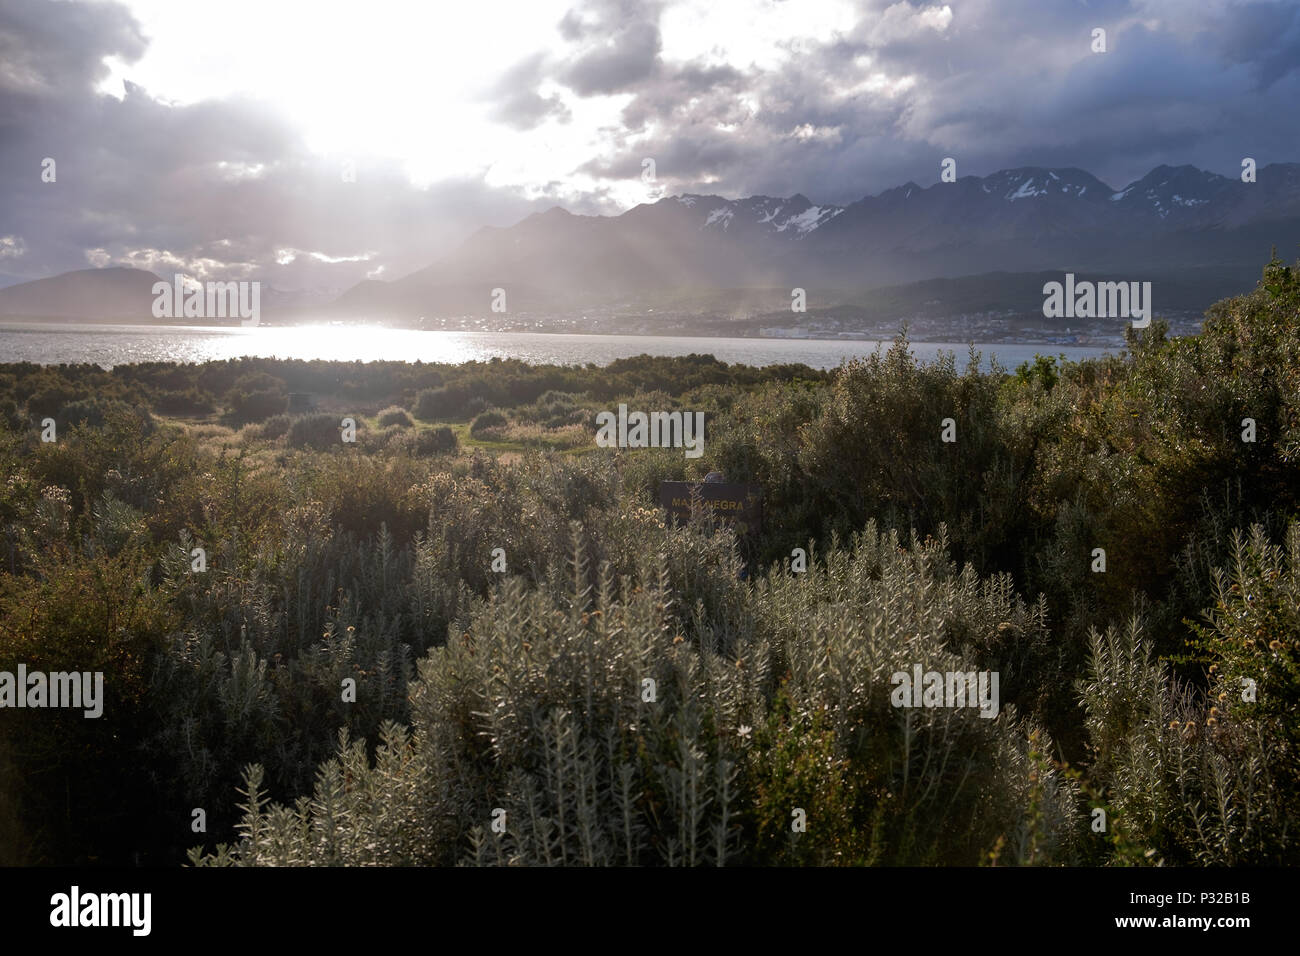 Die Sonne erleuchtet Ushuaia in der Ferne und die Pflanzen am Playa Larga im Vordergrund. Ushuaia liegt in einem stark bewölkt Region. Stockfoto